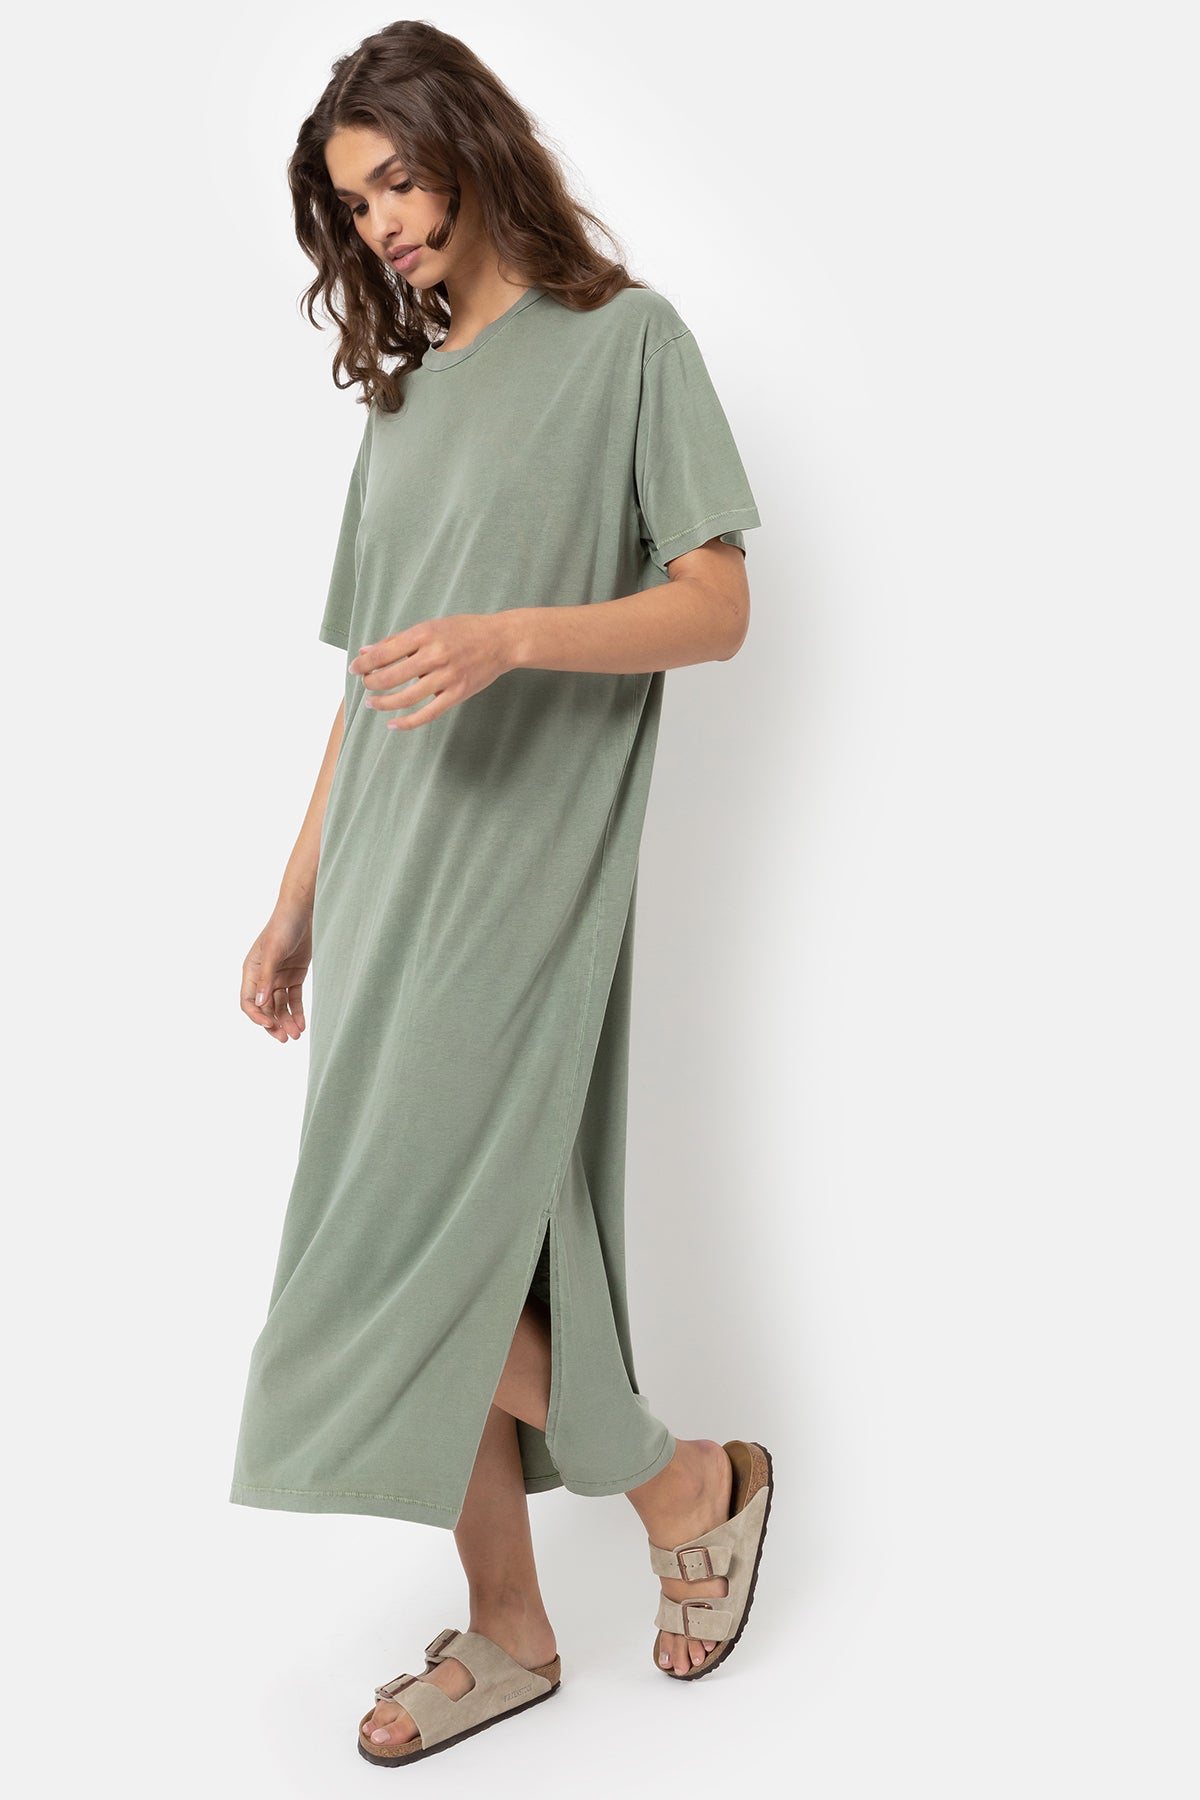 Eva Dress | Avocado Green